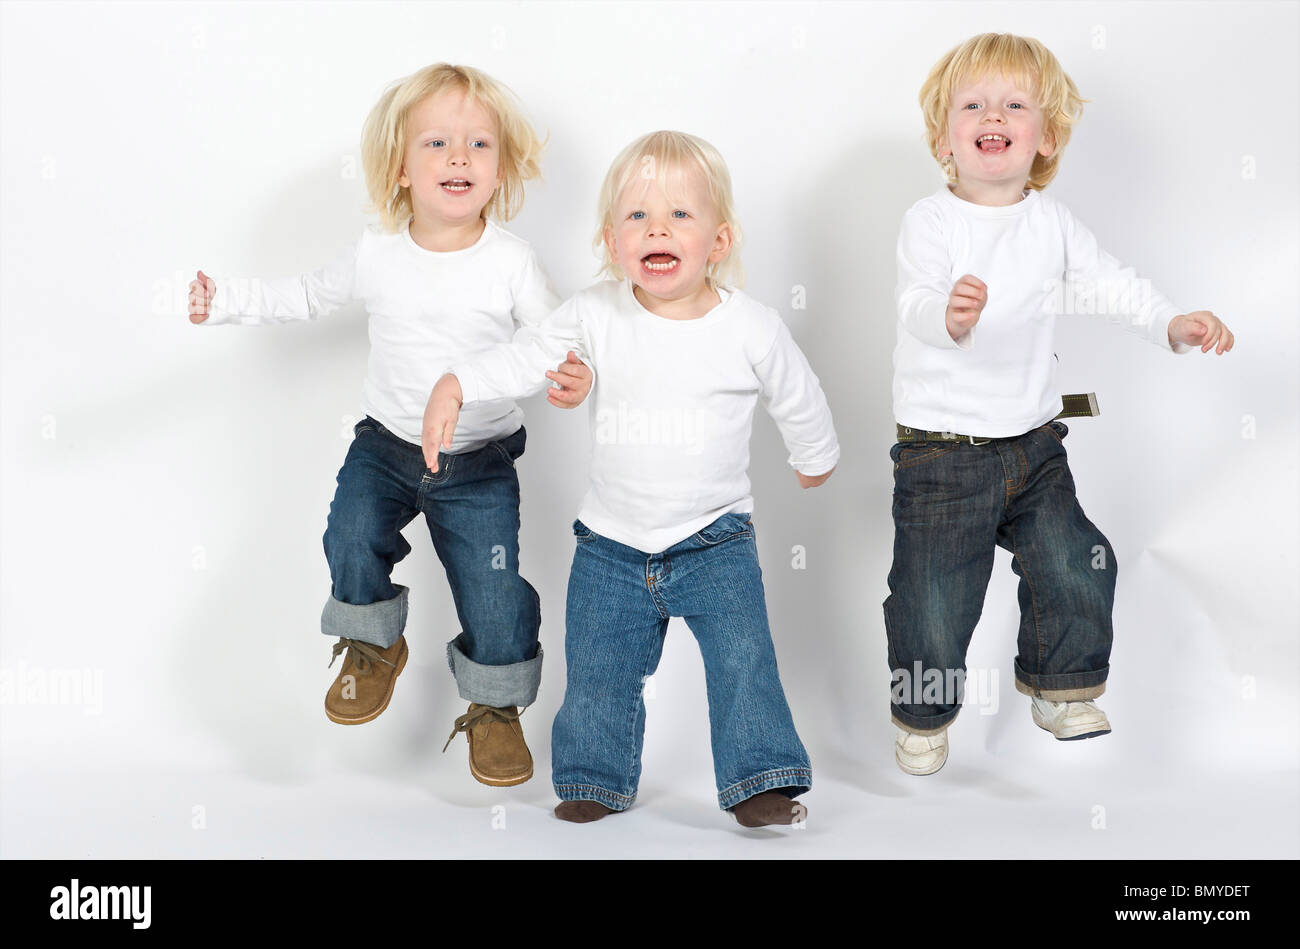 2-3 ans 3-4 ans blonde attitude bleu garçon caucasien enfant enfants émotion néerlandais ethnicité ethniques europa europe european e Banque D'Images